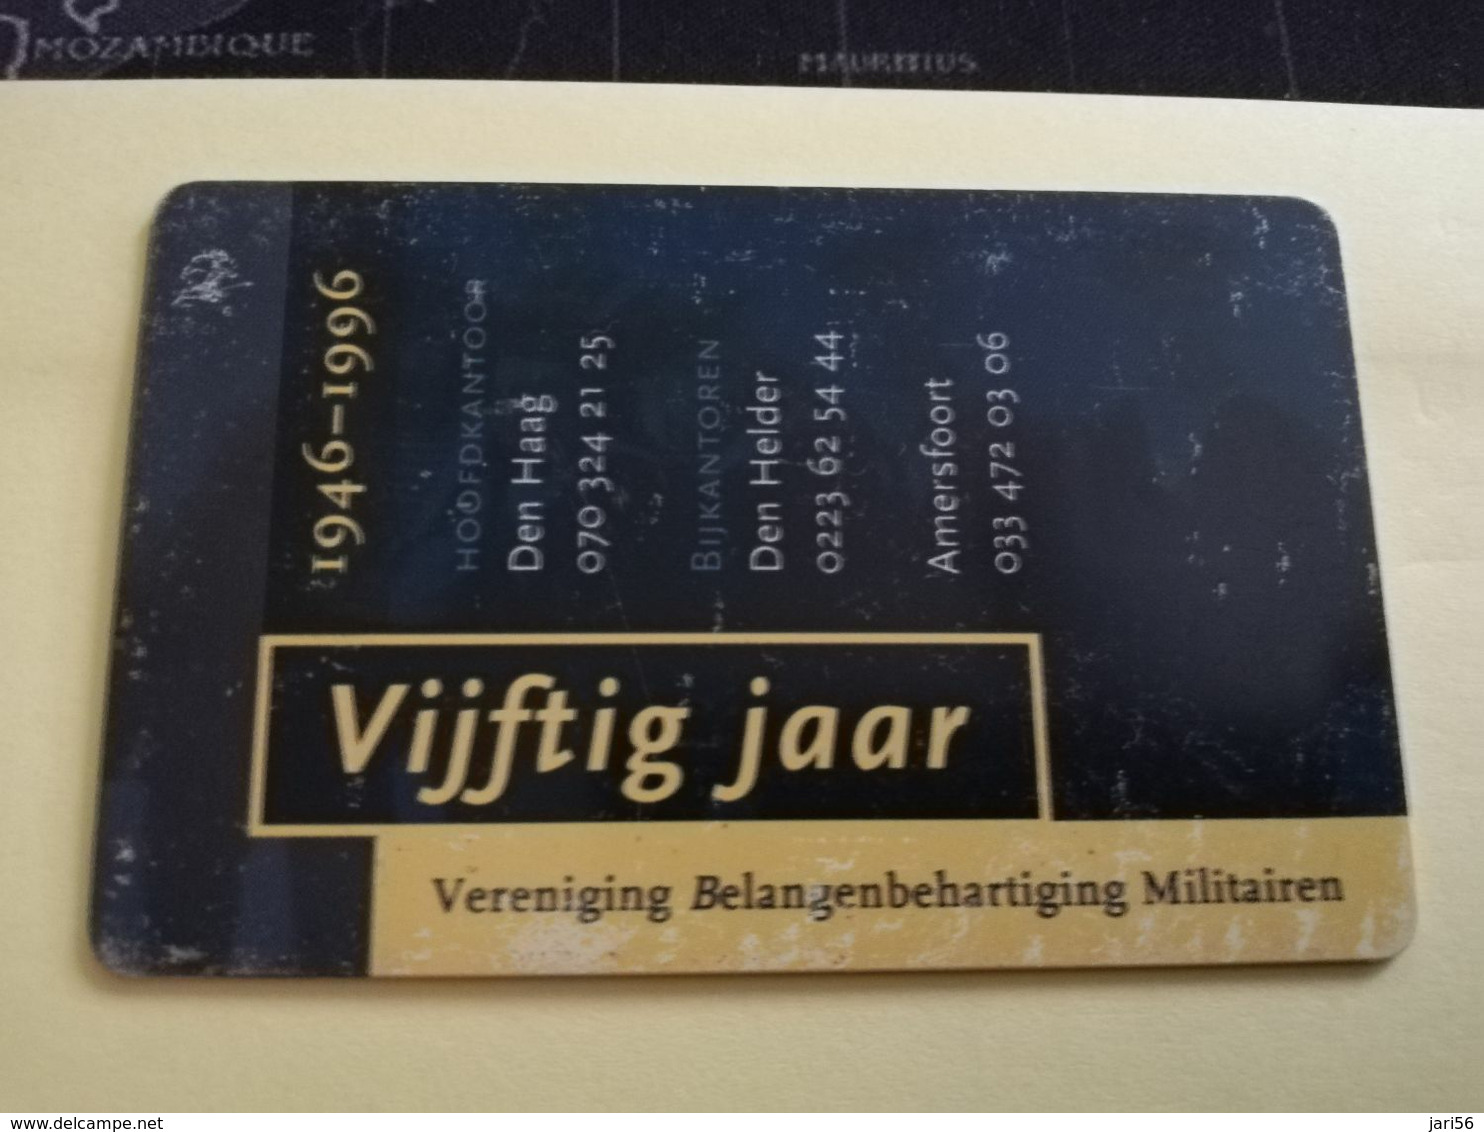 NETHERLANDS  ADVERTISING CHIPCARD HFL 2,50   CRD 275  VIJFTIG JAAR VBM VAKBOND MILITAIREN          Fine Used   ** 3209** - Privat